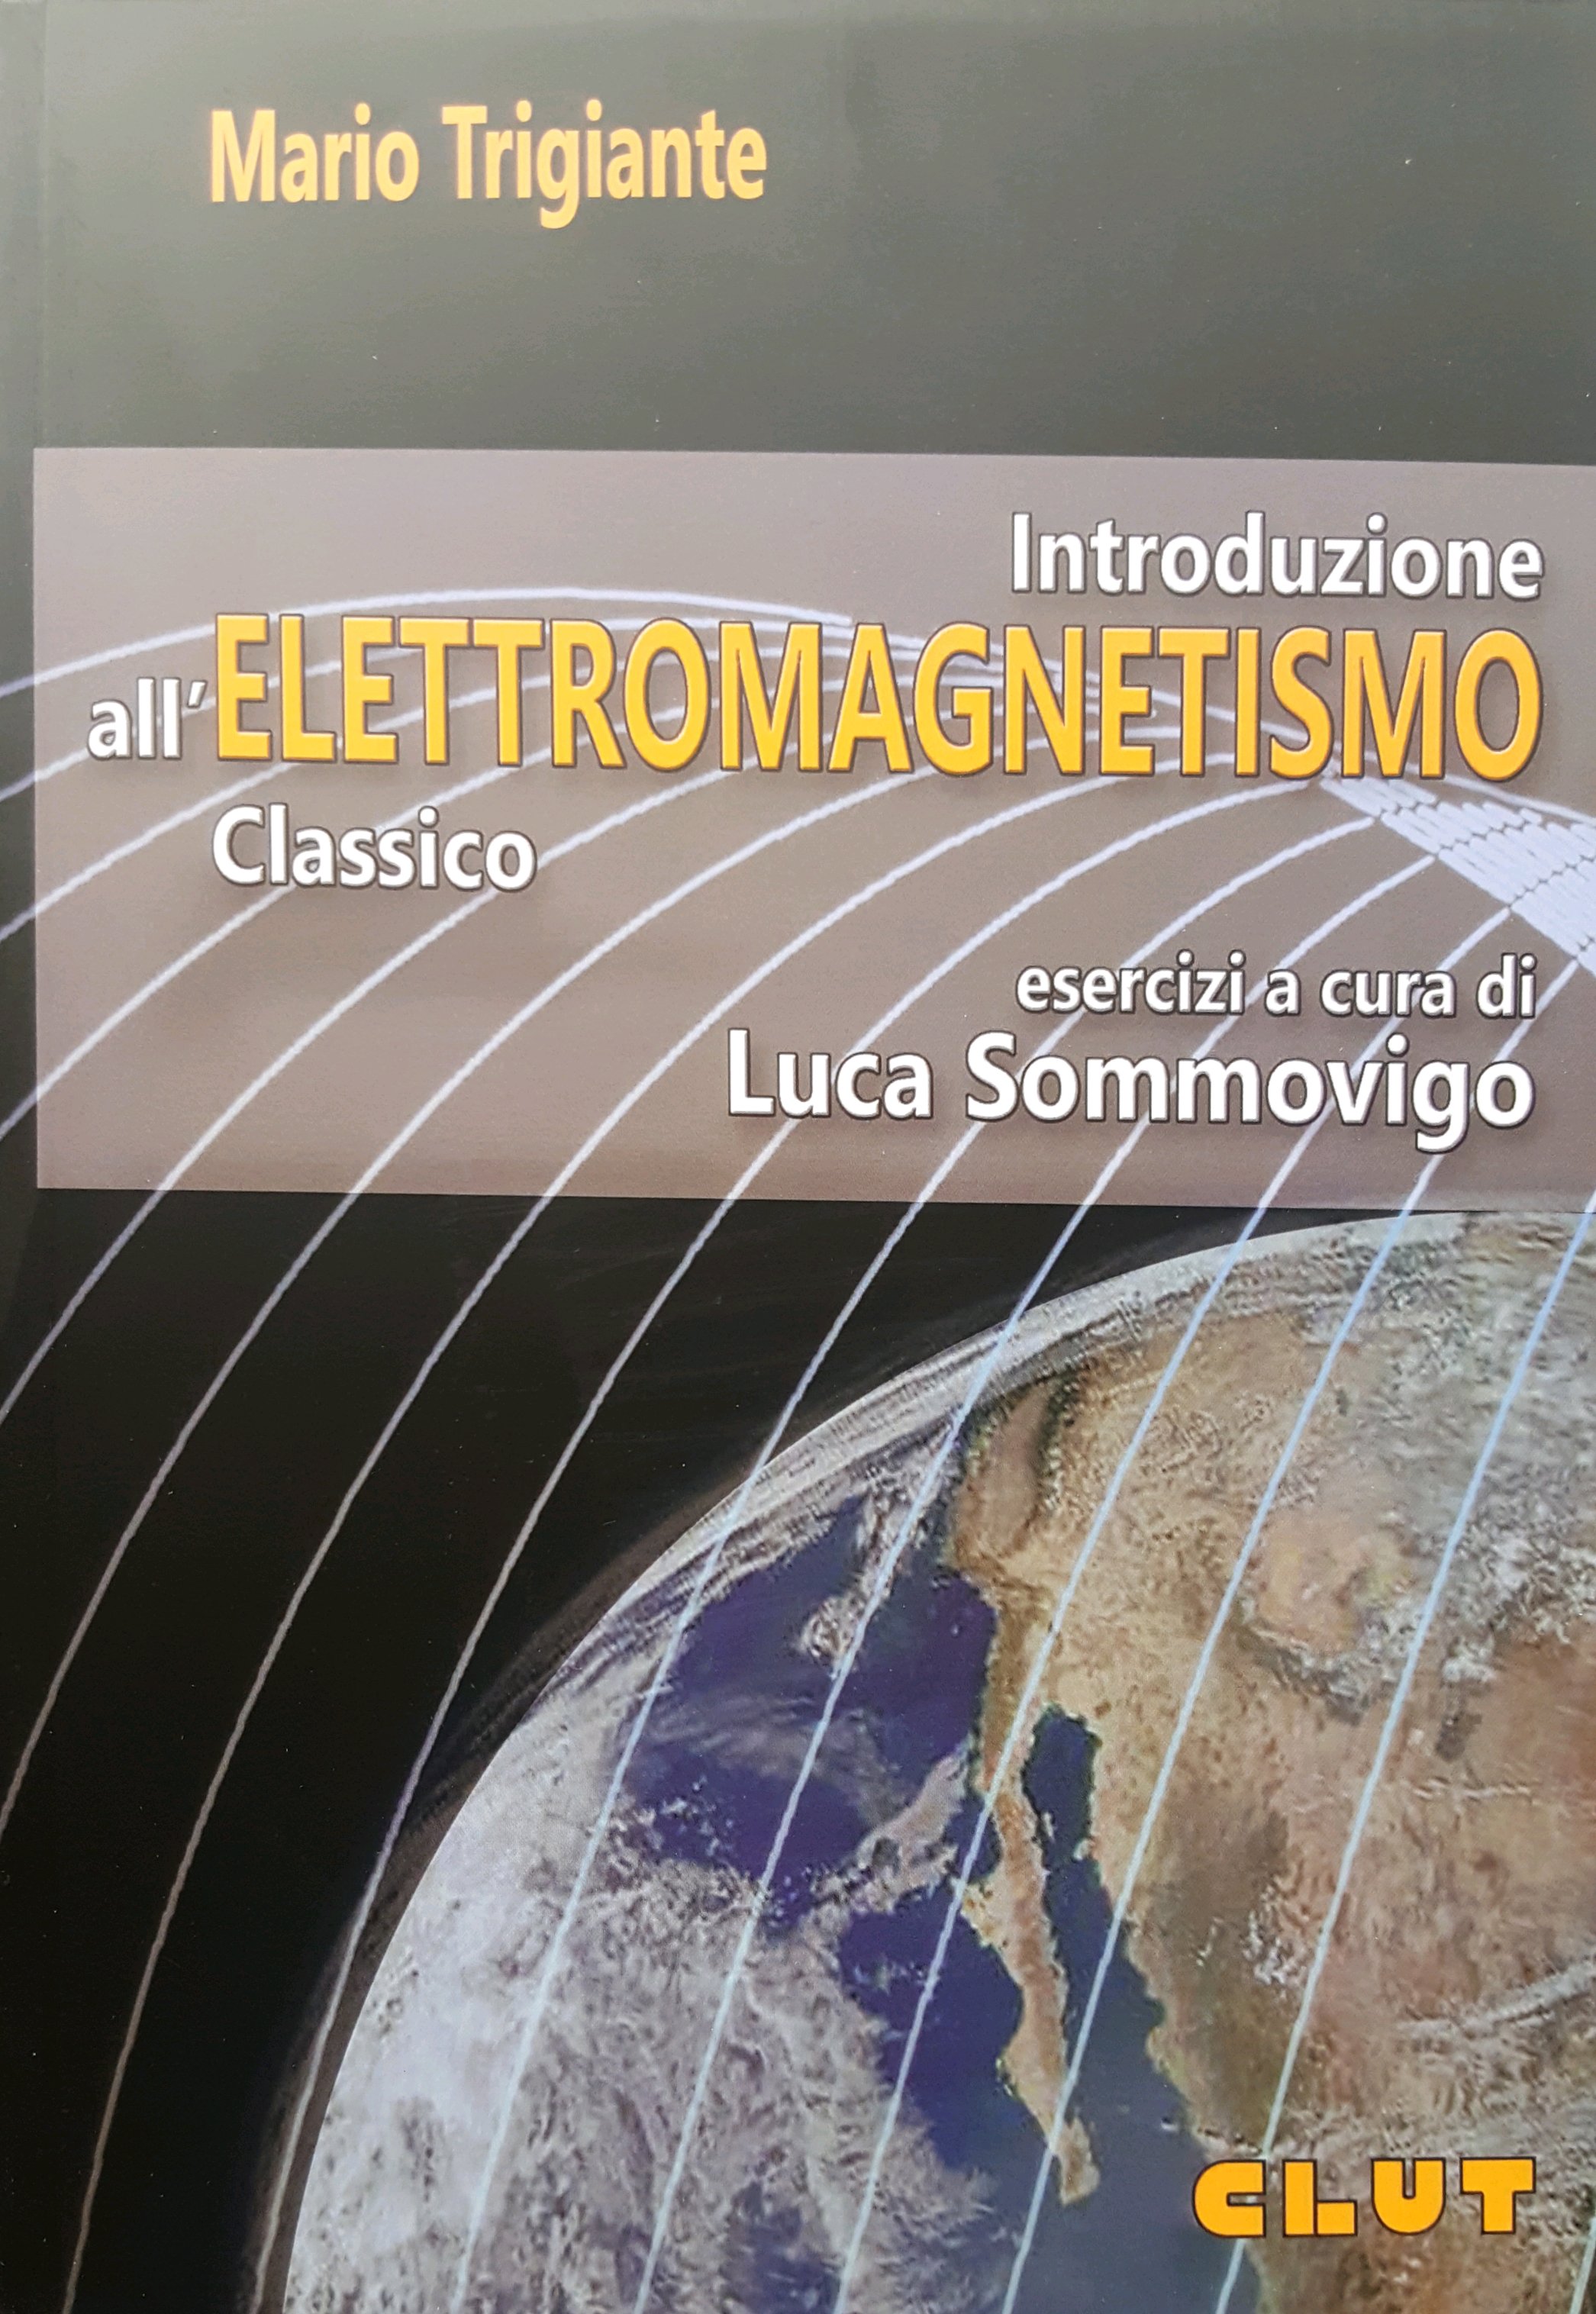 Introduzione all'elettromagnetismo classico - esercizi a cura di L. Sommovigo